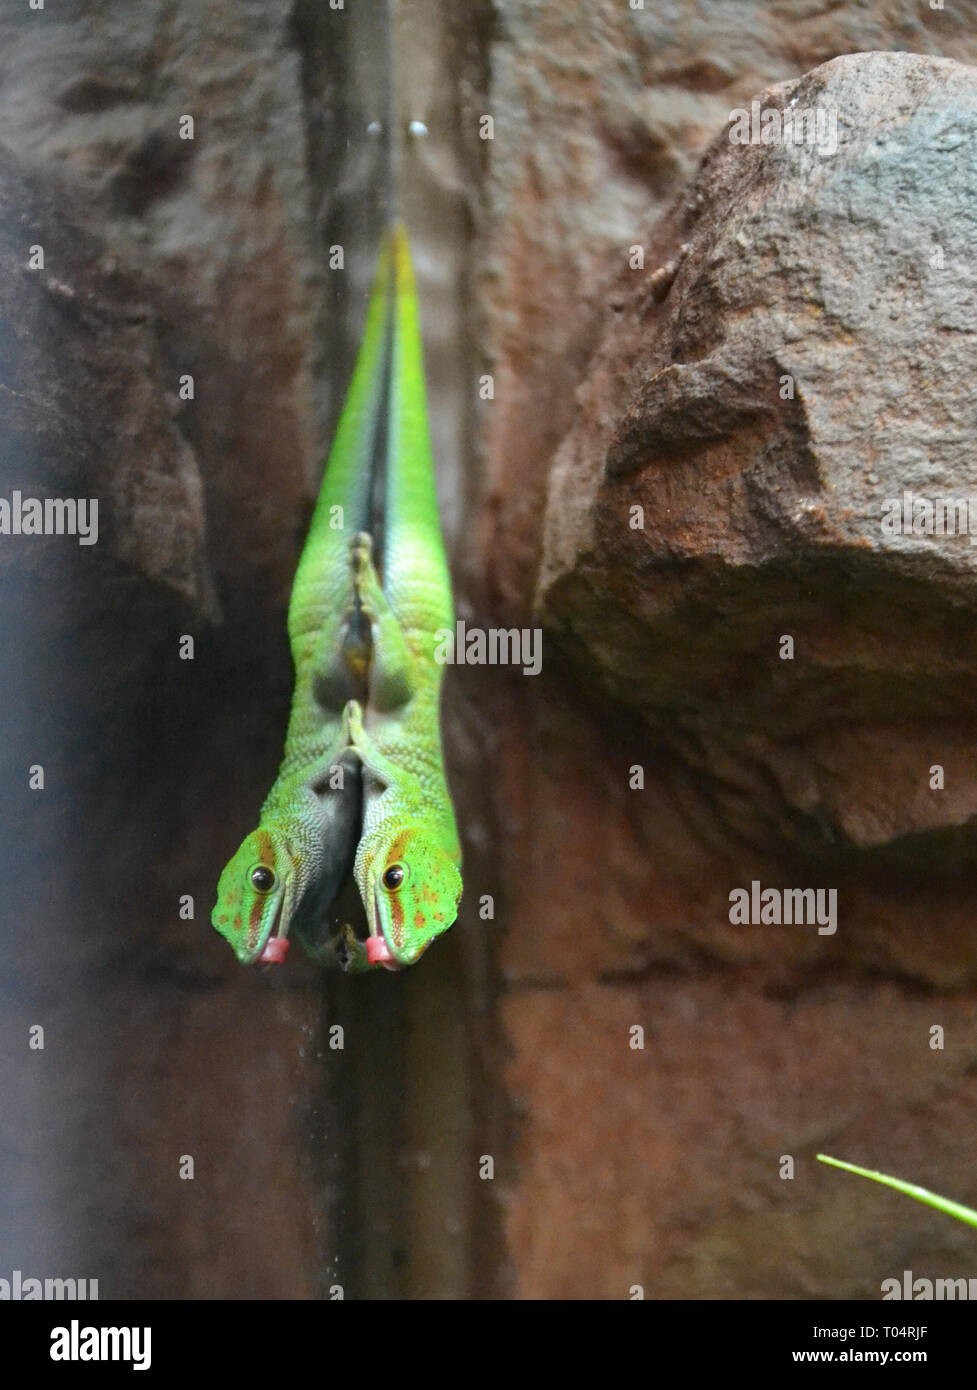 Green Day Gecko im Tropical Flügel Zoo, Chelmsford, Essex, Großbritannien. Dieser Zoo geschlossen im Dezember 2017. Stockfoto